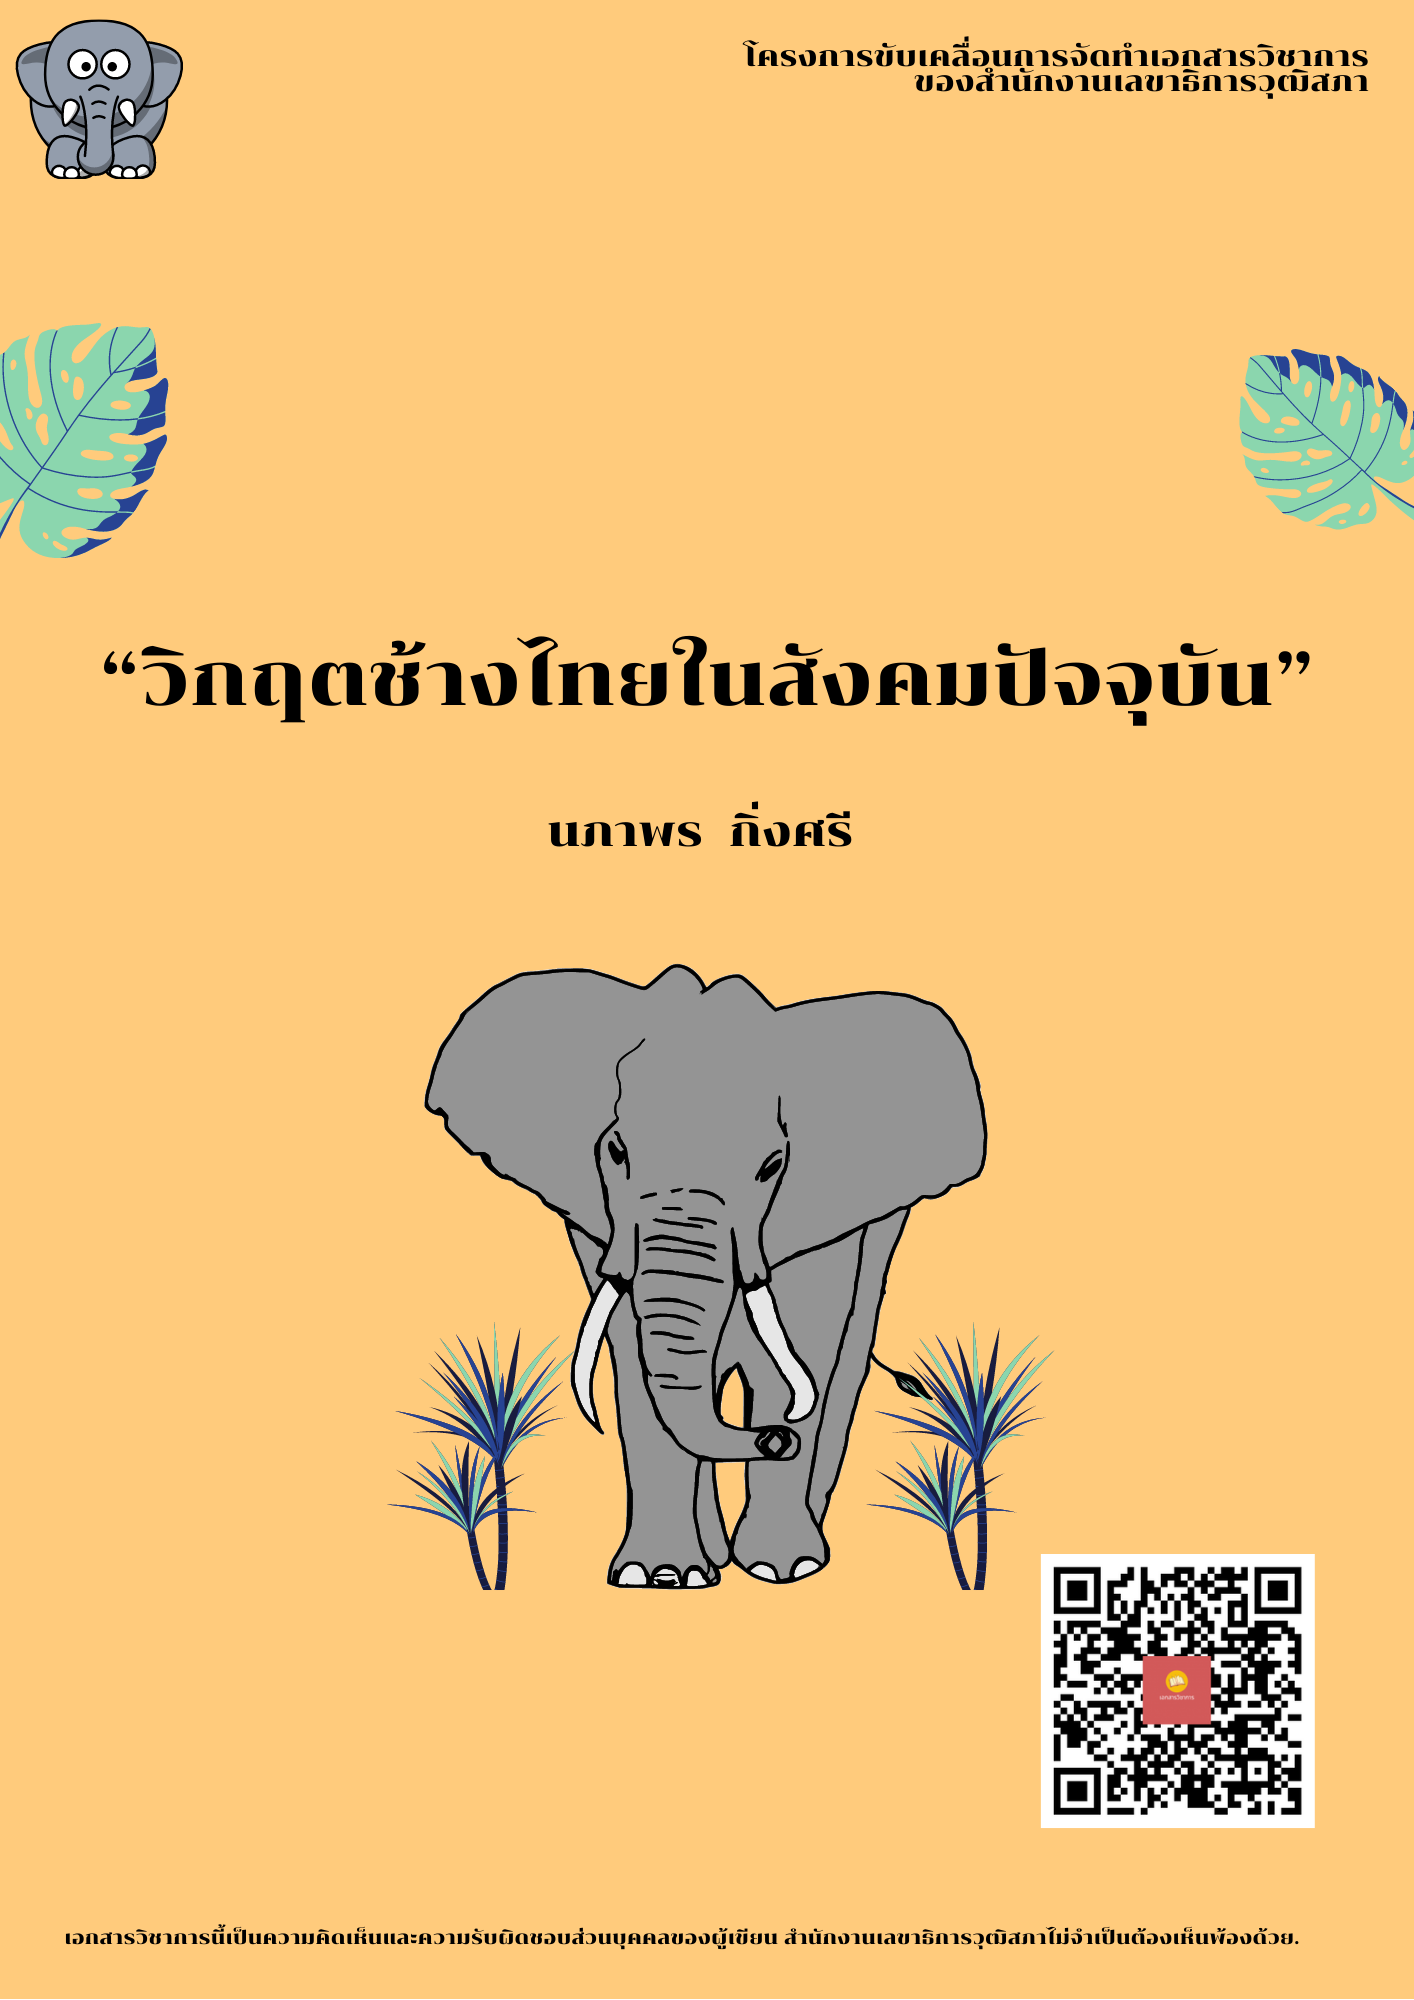 บทความทางวิชาการ เรื่อง "วิกฤตช้างไทยในสังคมปัจจุบัน"